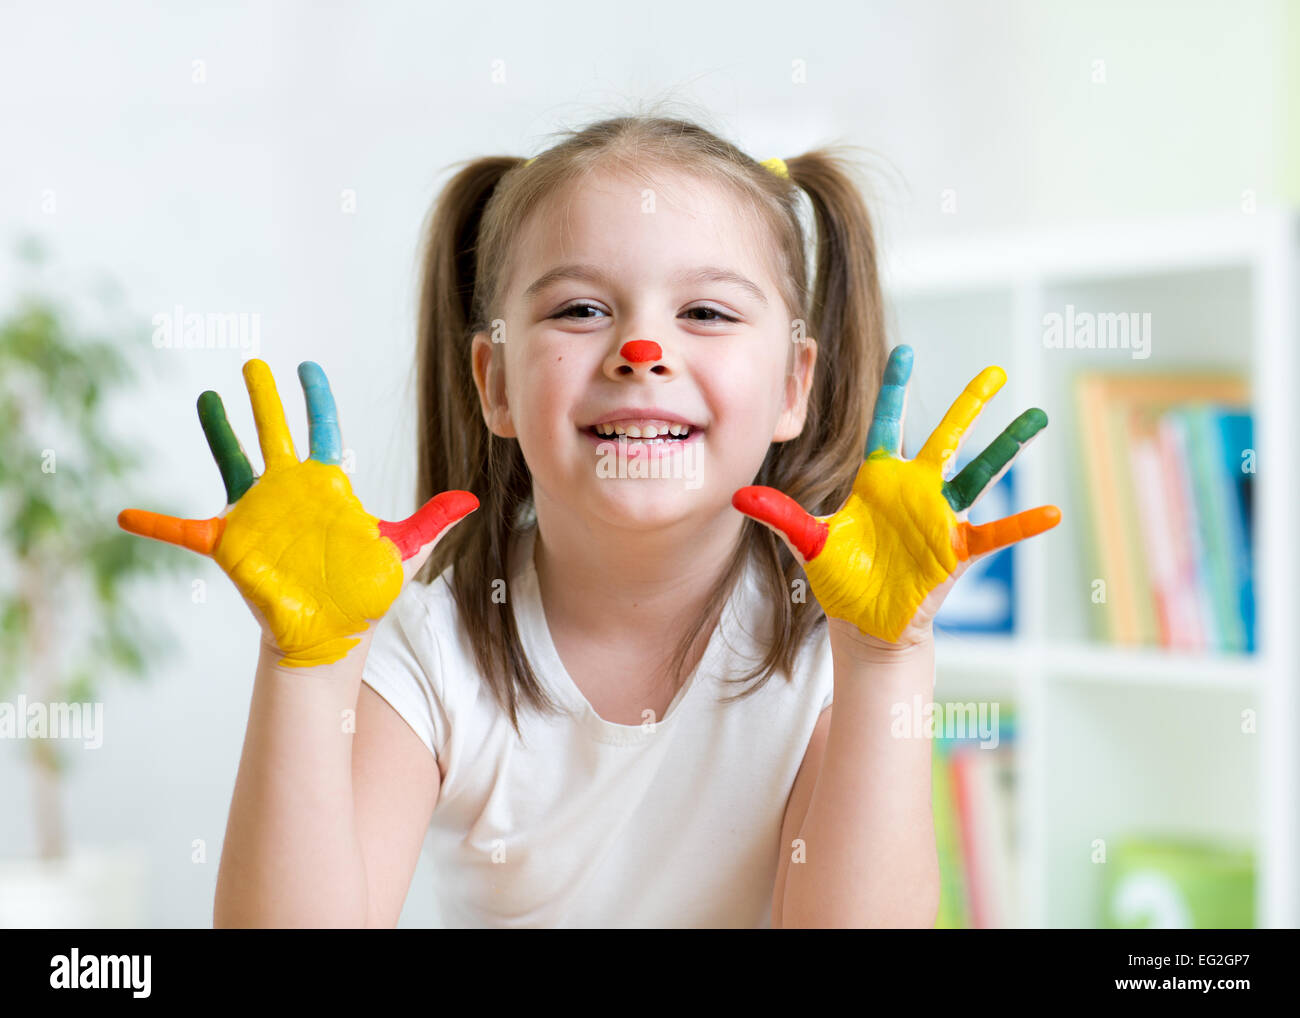 Cute kid enfant montrant ses mains peints dans des couleurs vives Banque D'Images